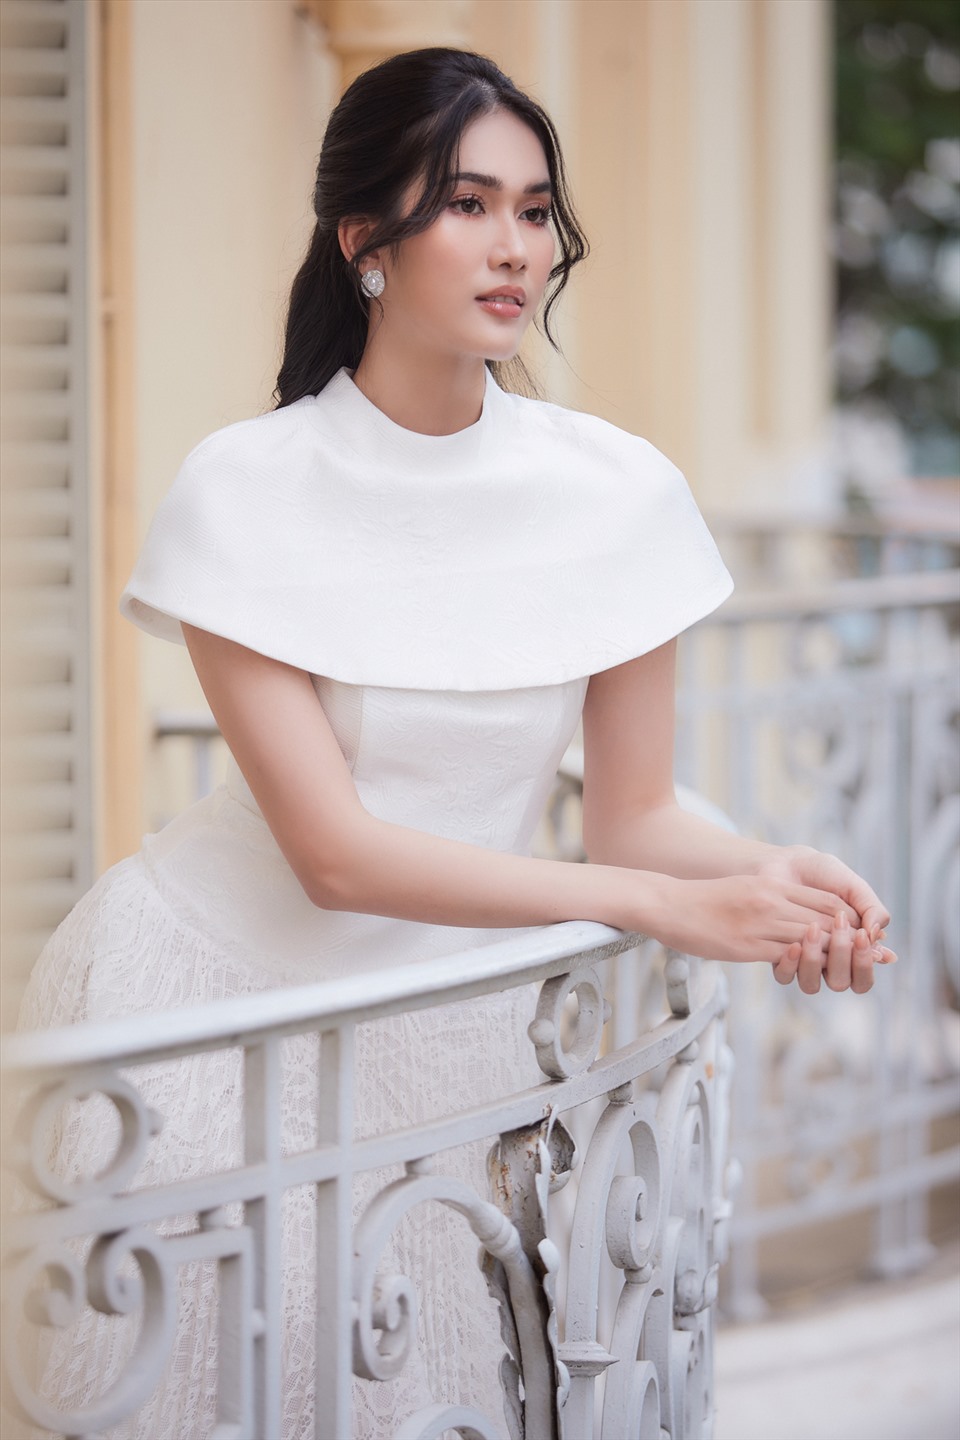 Á hậu Phương Anh sinh ra và lớn lên tại TPHCM. Cô giành ngôi vị Á hậu 1 Hoa hậu Việt Nam 2020. Cô đuợc kỳ vọng sẽ làm nên chuyện tại Miss International 2022 sắp tới. Ảnh: Sen Vàng.